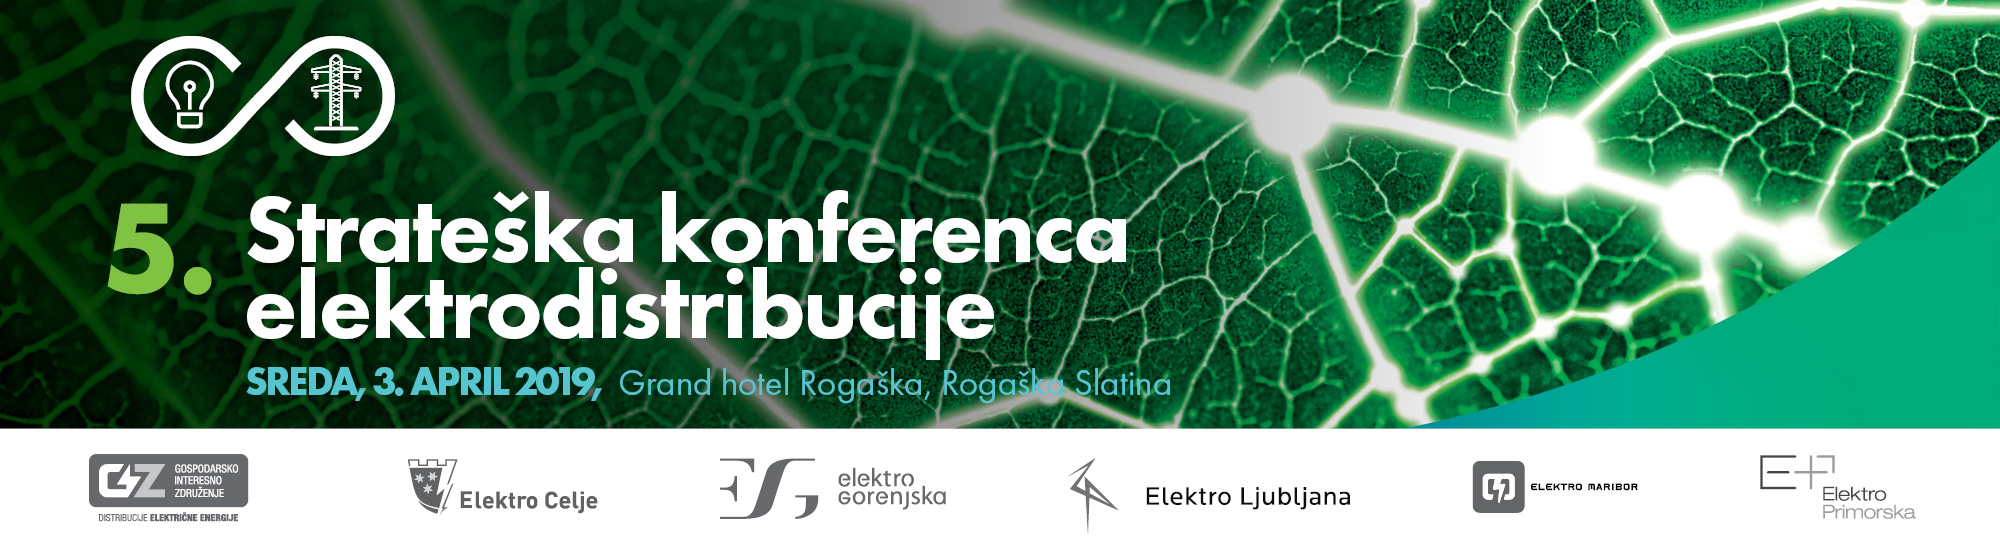 5. strateška konferenca elektrodistribucije